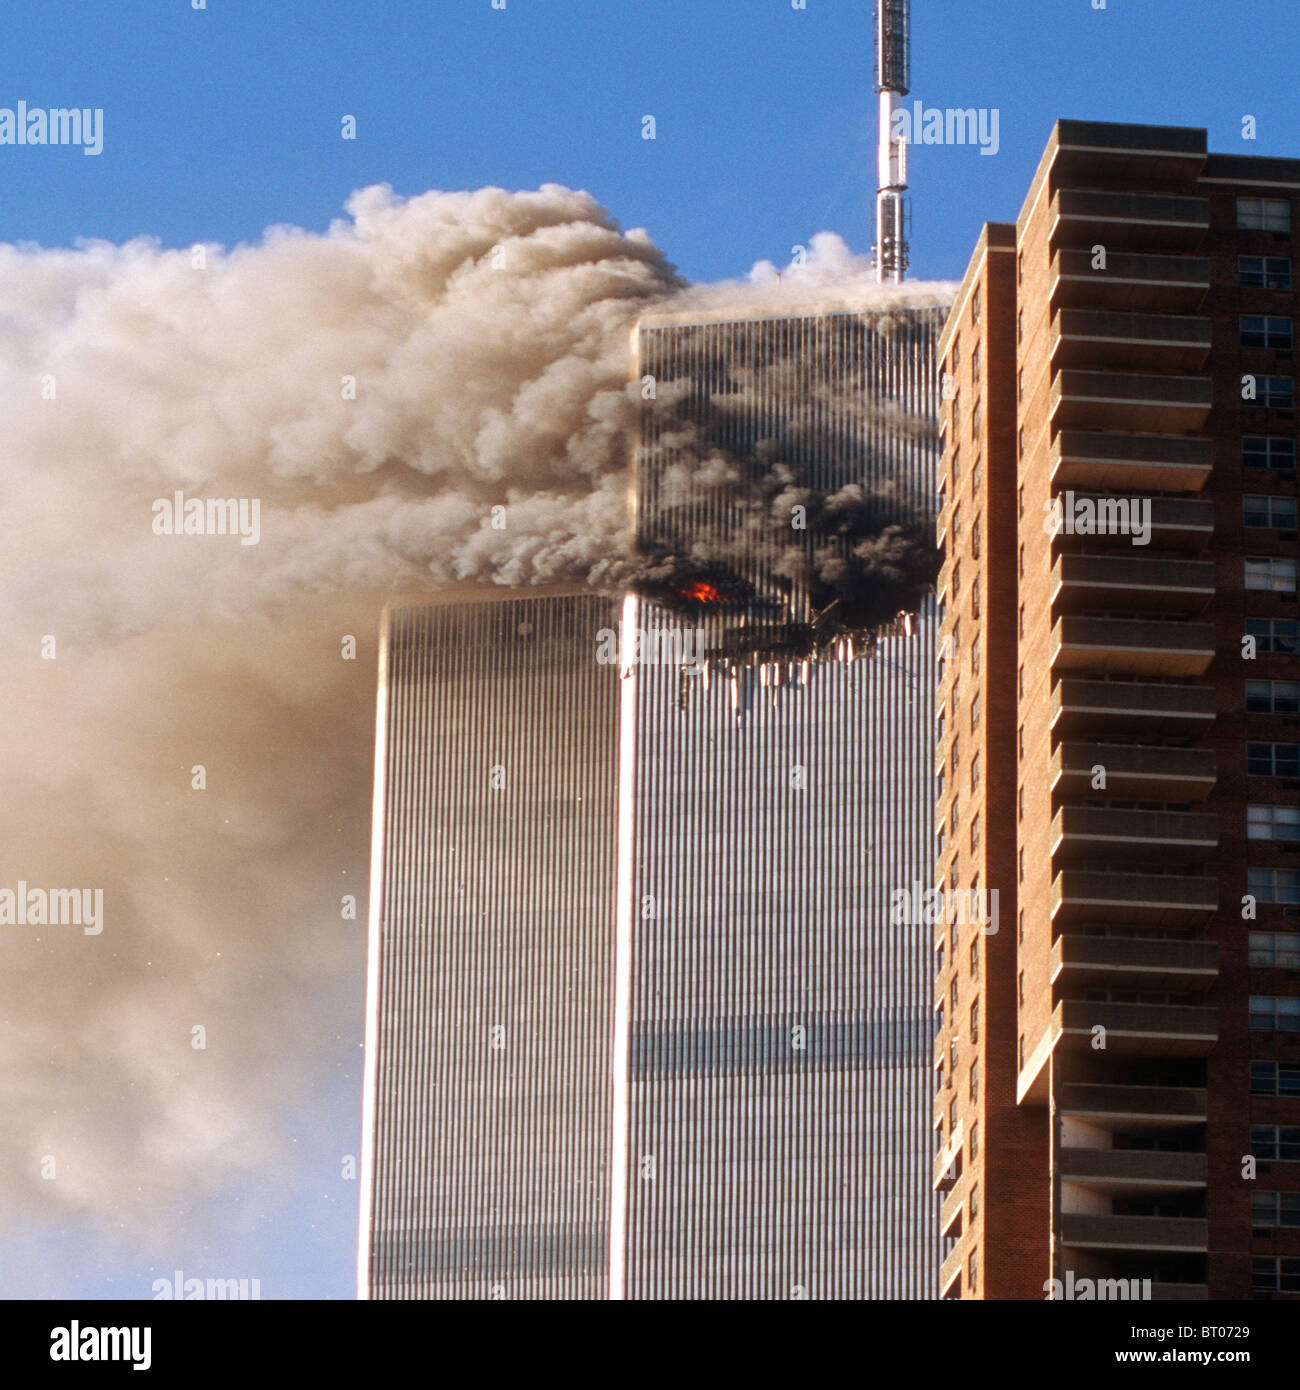 World Trade Center September 11, 2001 Stock Photo